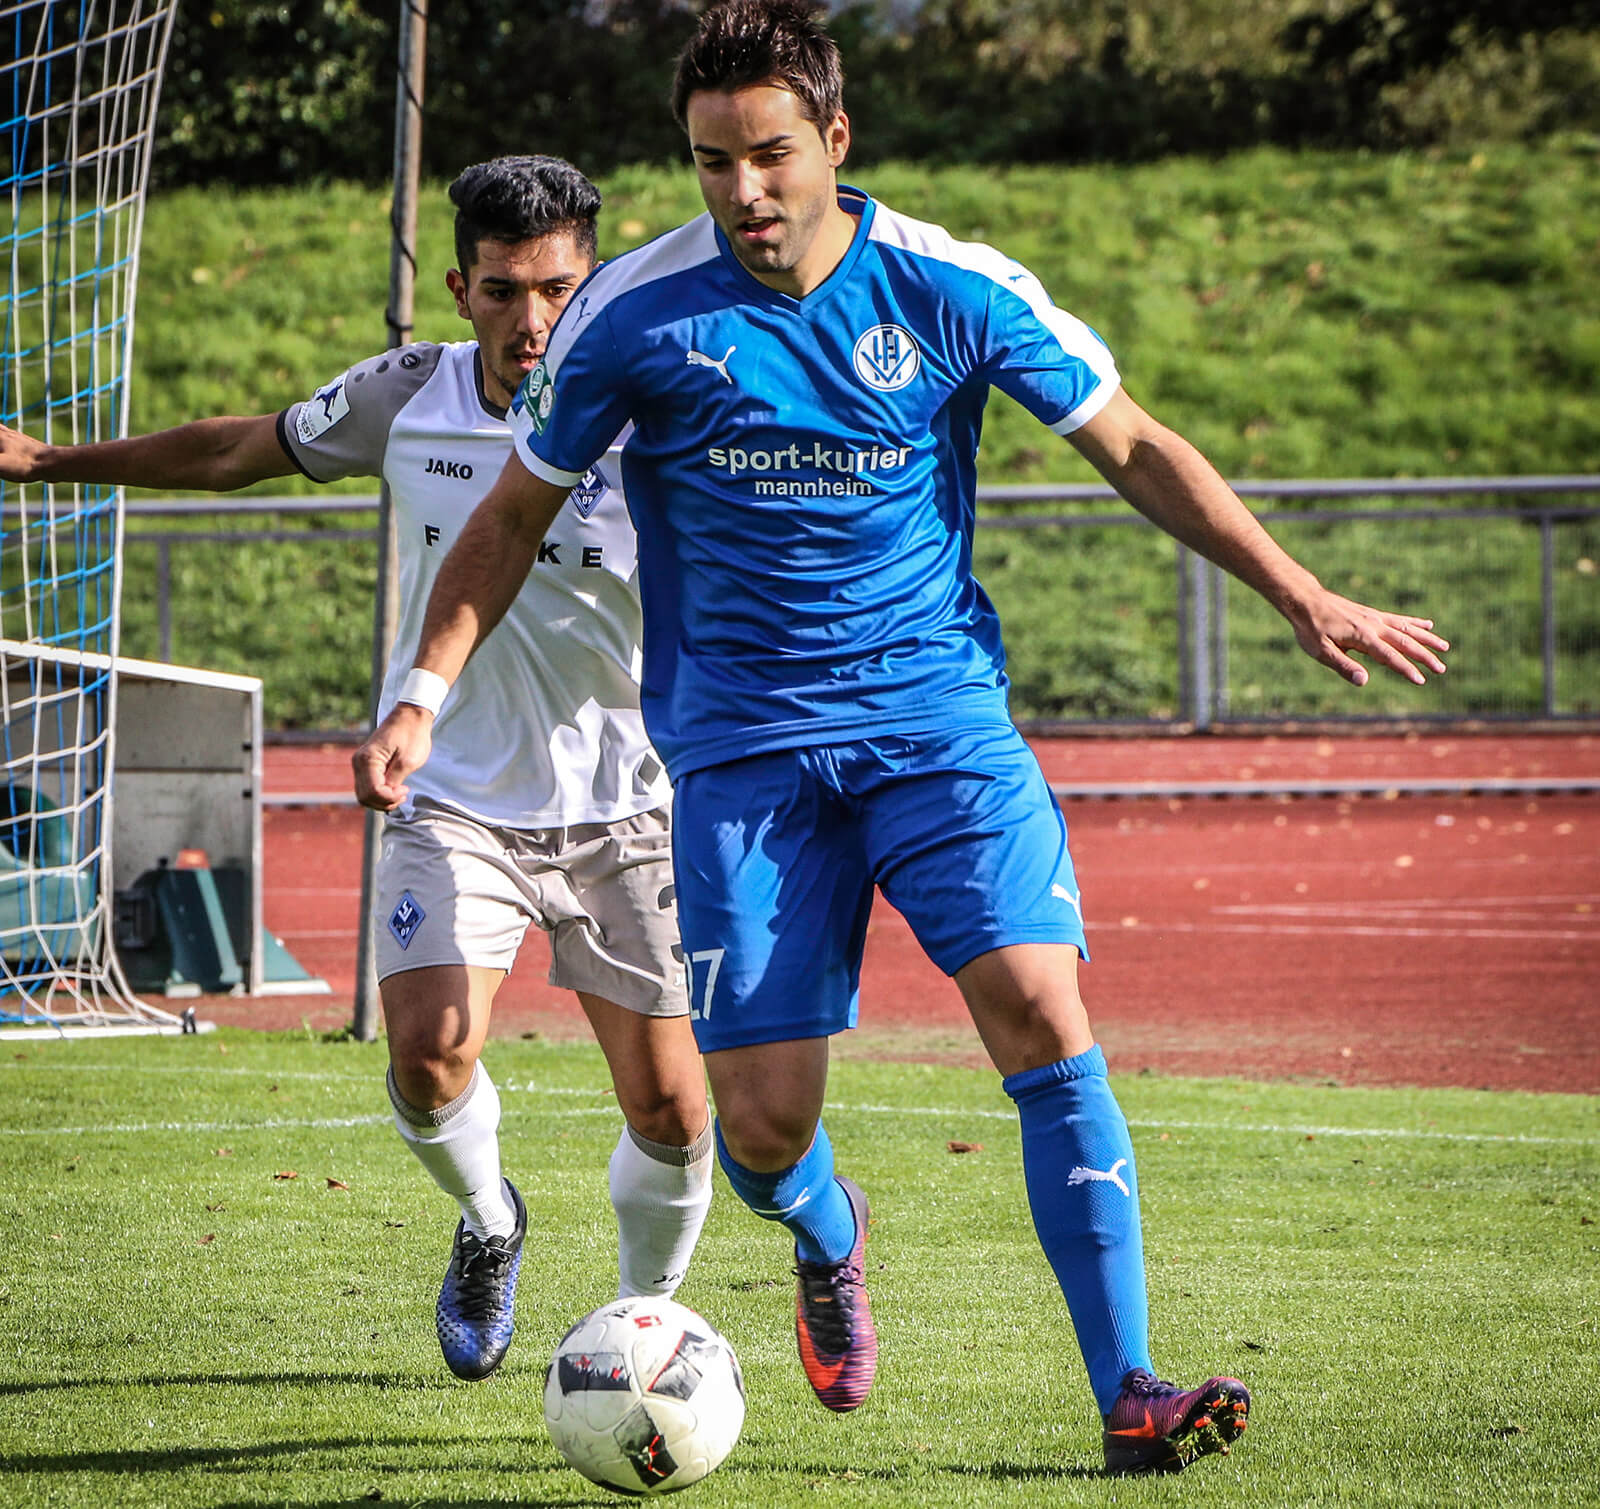  Lukas Cambeis (blau) hier noch im Trikot des FV Fortuna Heddesheim gegen Hassan Amin (weiß) im Spiel gegen den SV Waldhof Mannheim (Badischer Pokal/Viertelfinale 17/18). Bild: Alfio Marino